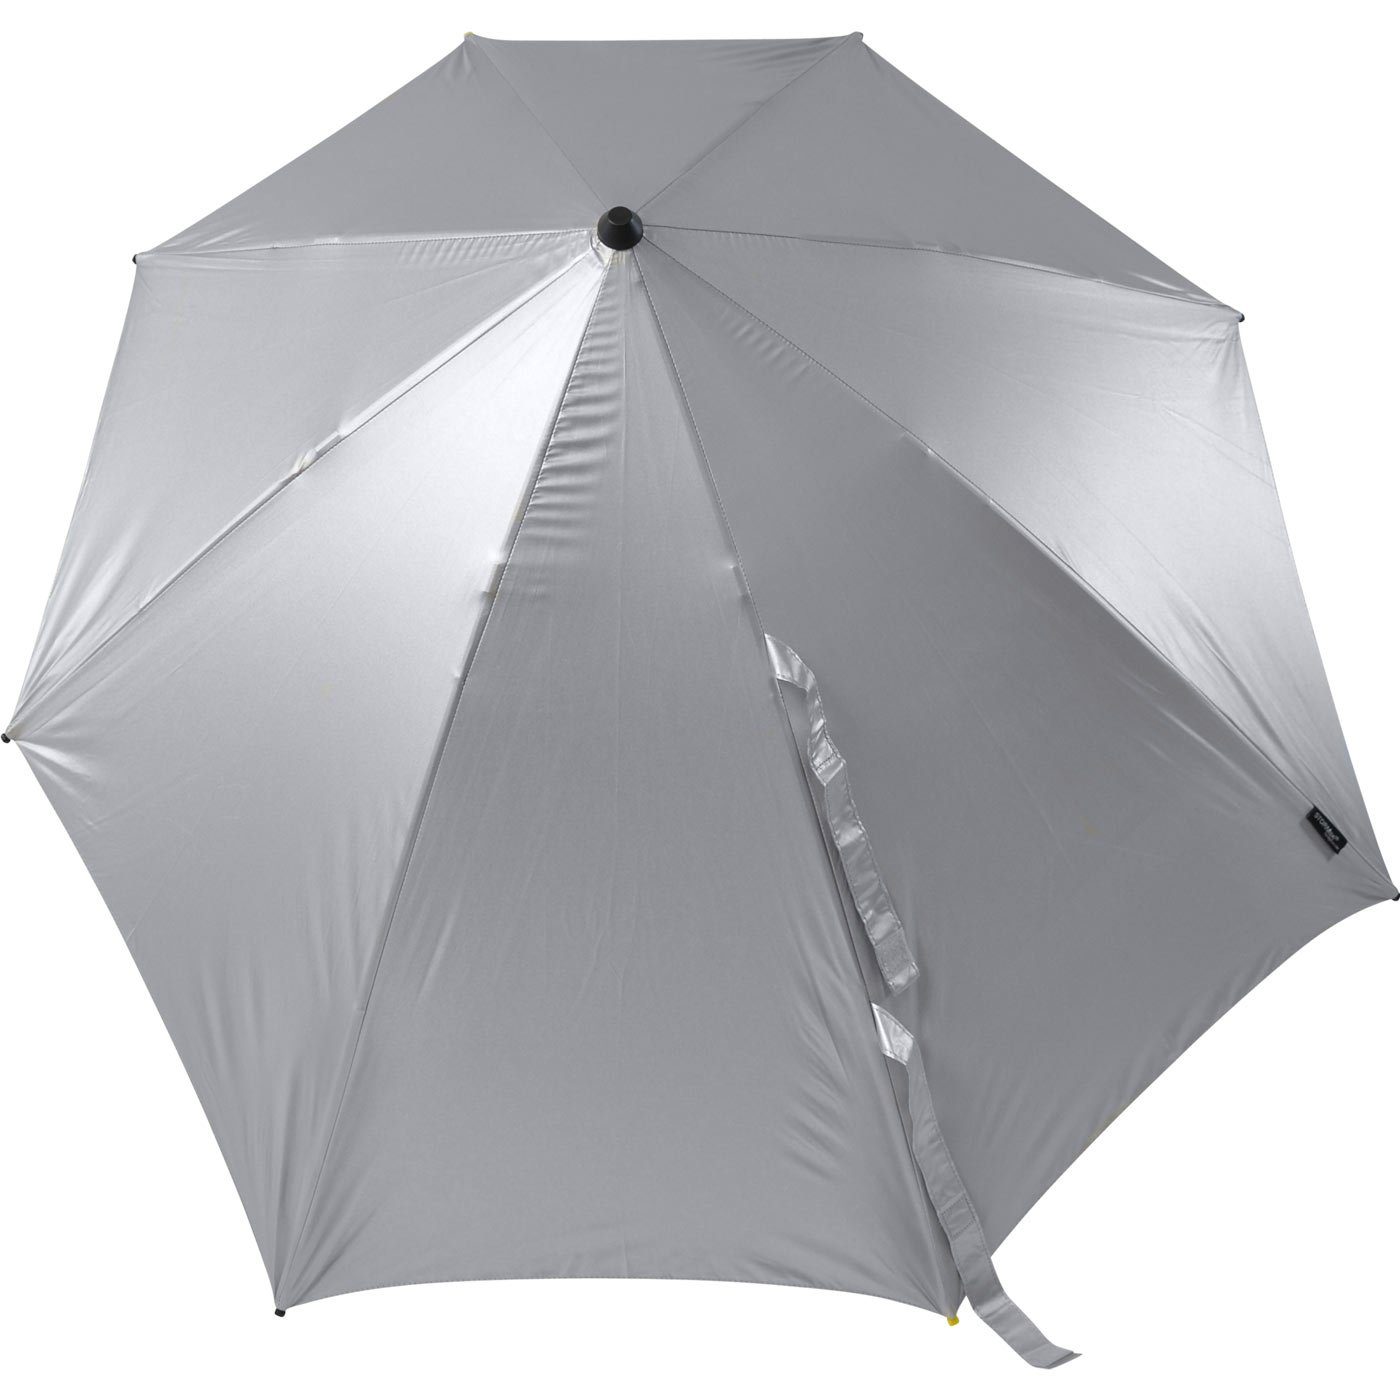 Form Stockregenschirm zu aerodynamischer seine in km/h hält sich Regenschirm, Schirm silber bis durch der besondere aus STORMaxi 100 Sturmschirm Impliva Wind, den dreht